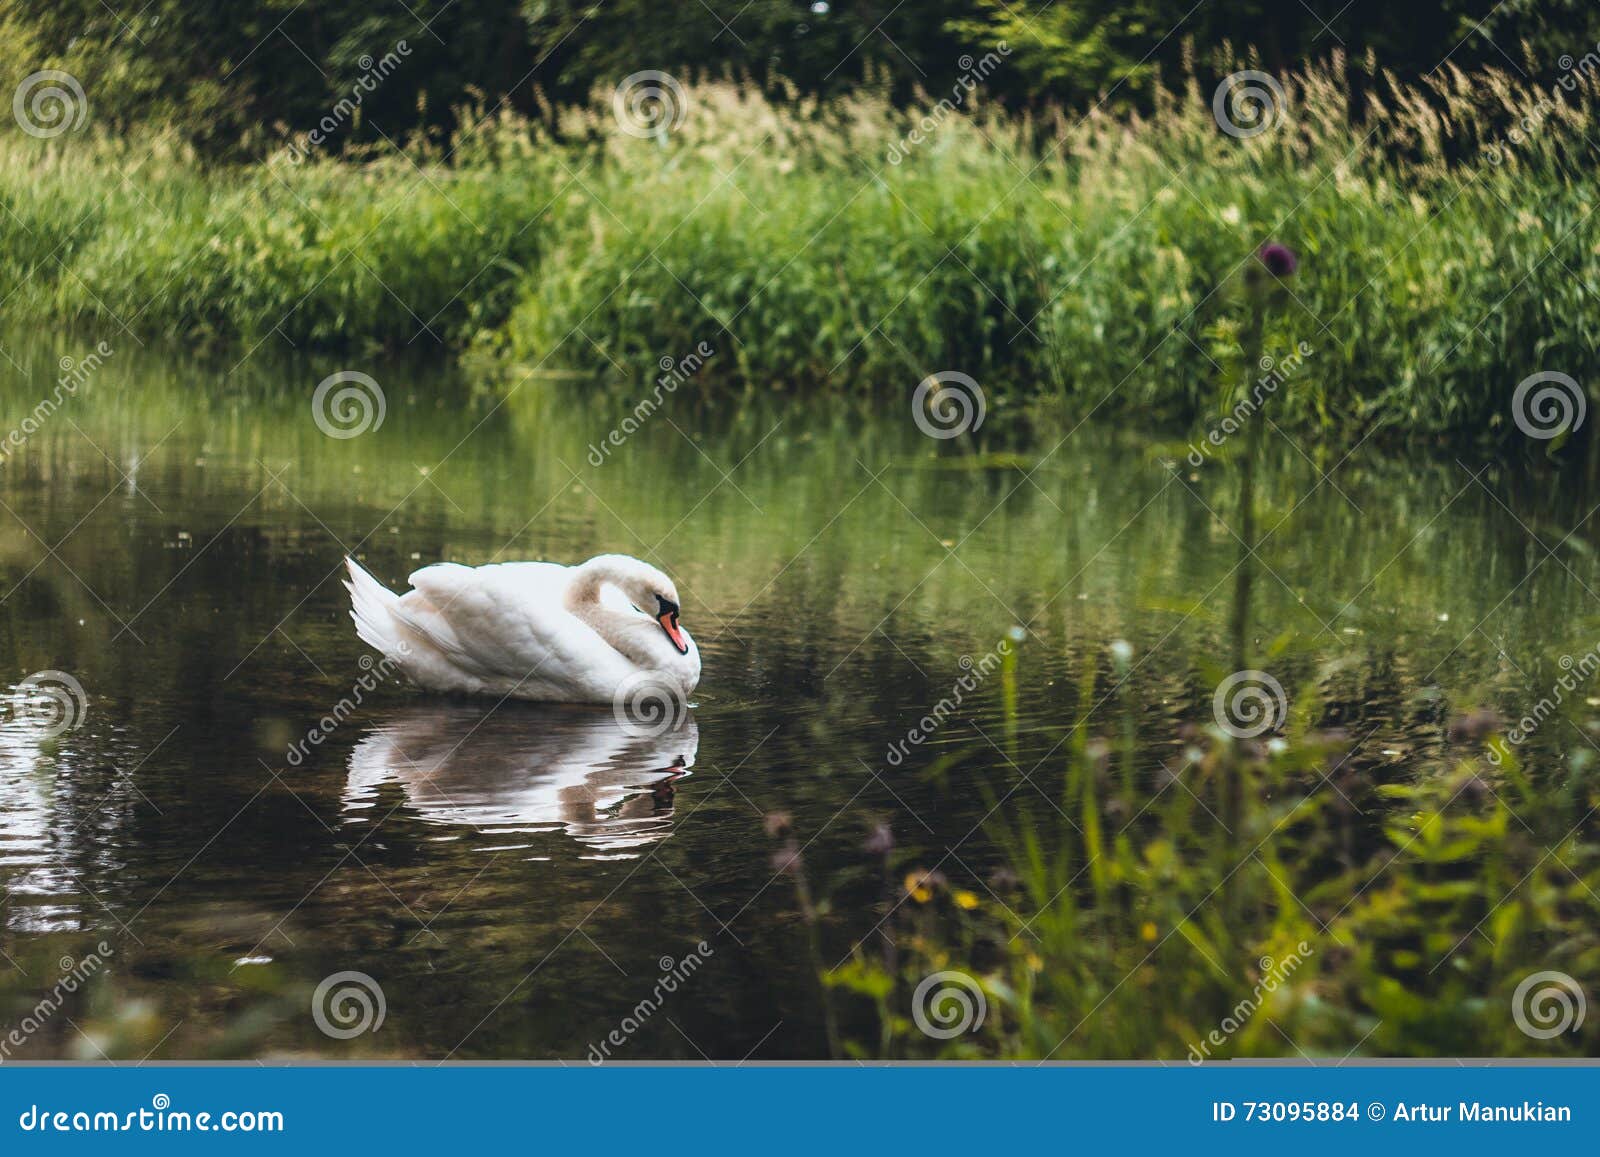 Лебедь в природе. Лебедь плавает на живописное реку